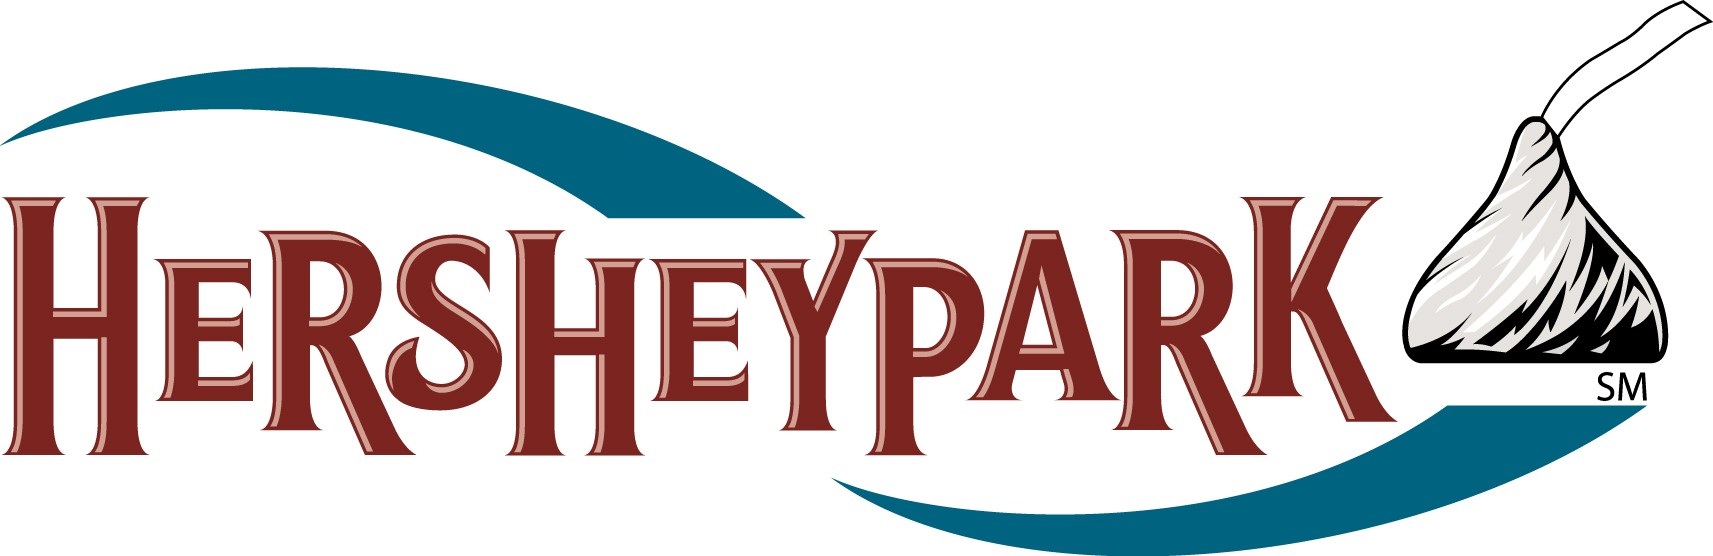 Image result for hershey park logo